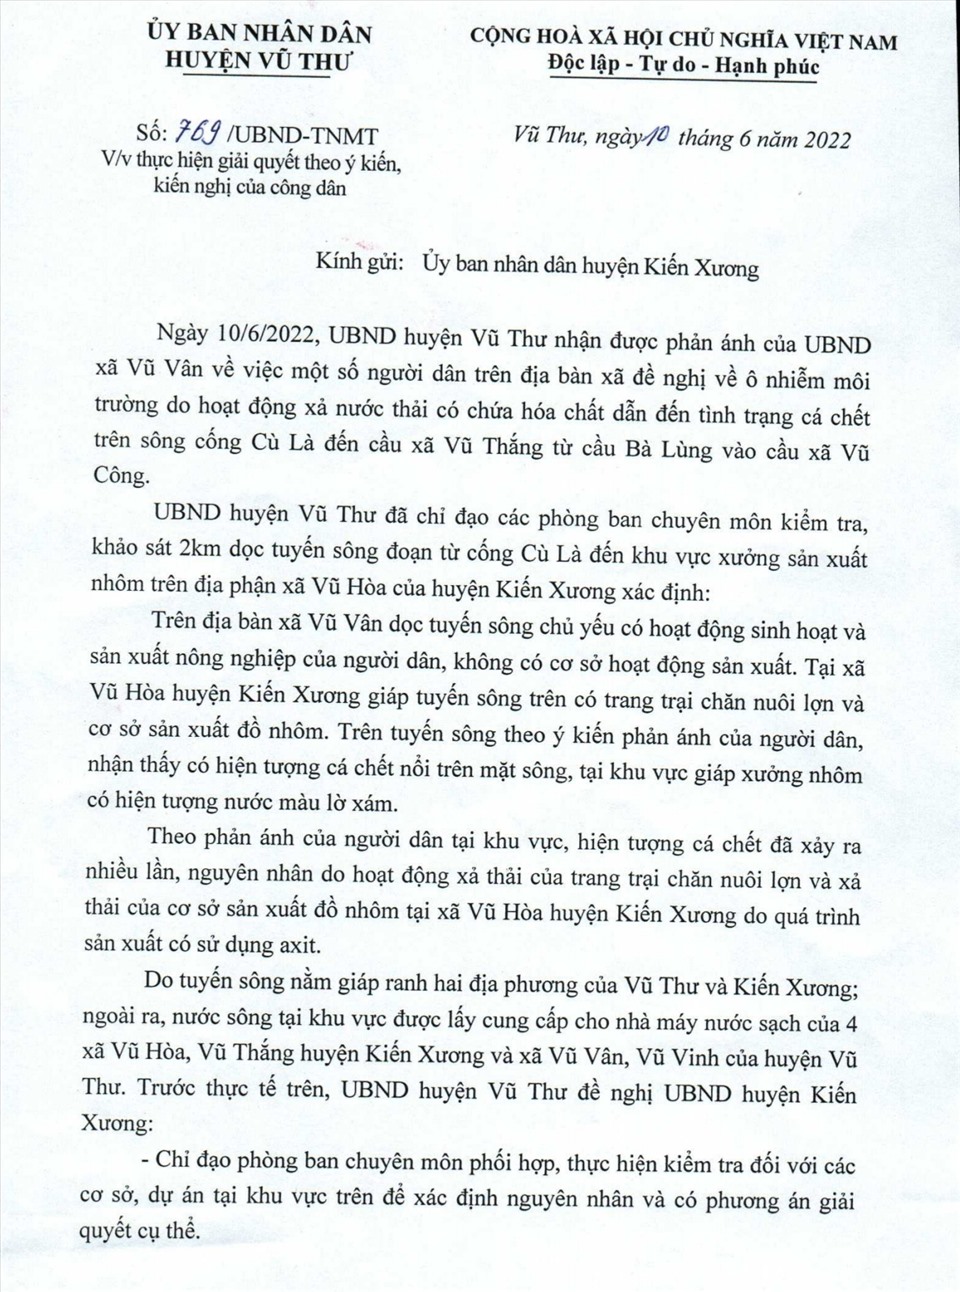 Văn bản của UBND huyện Vũ Thư gửi UBND huyện Kiến Xương và các cơ quan liên quan.